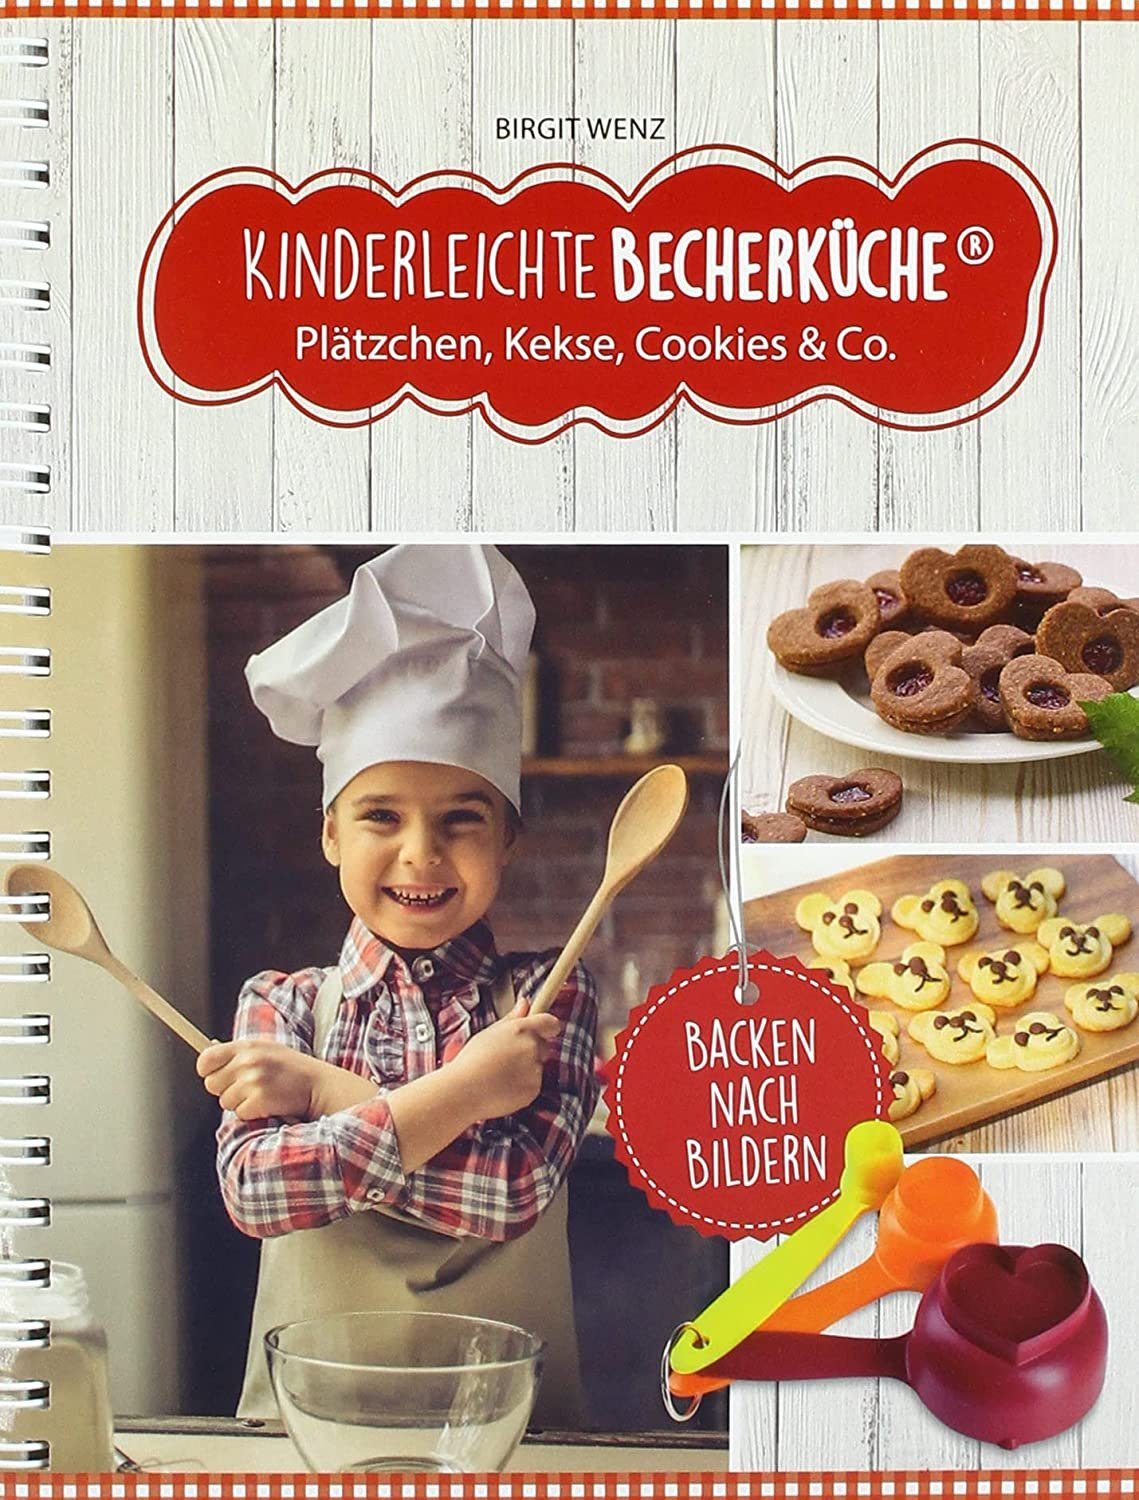 Kinderleichte Becherküche Notizbuch Plätzchen Kekse Cookies & Co., Rezeptbuch, Backbuch